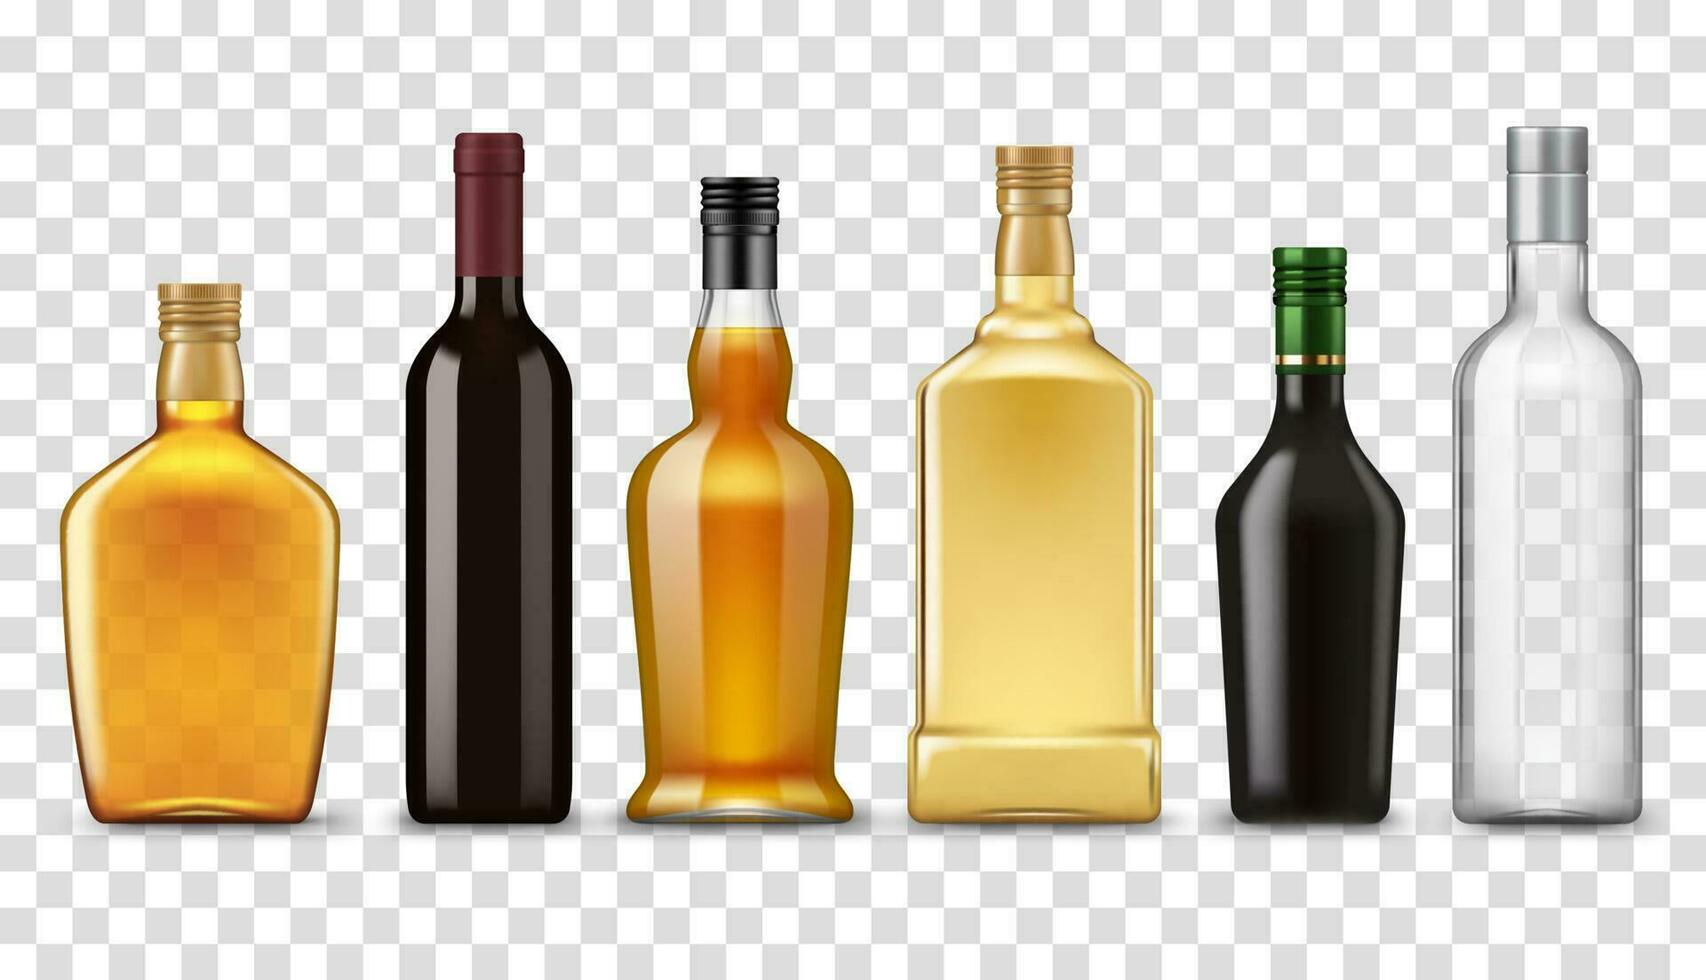 realistico whisky, Vodka, Rum e vino bottiglie vettore